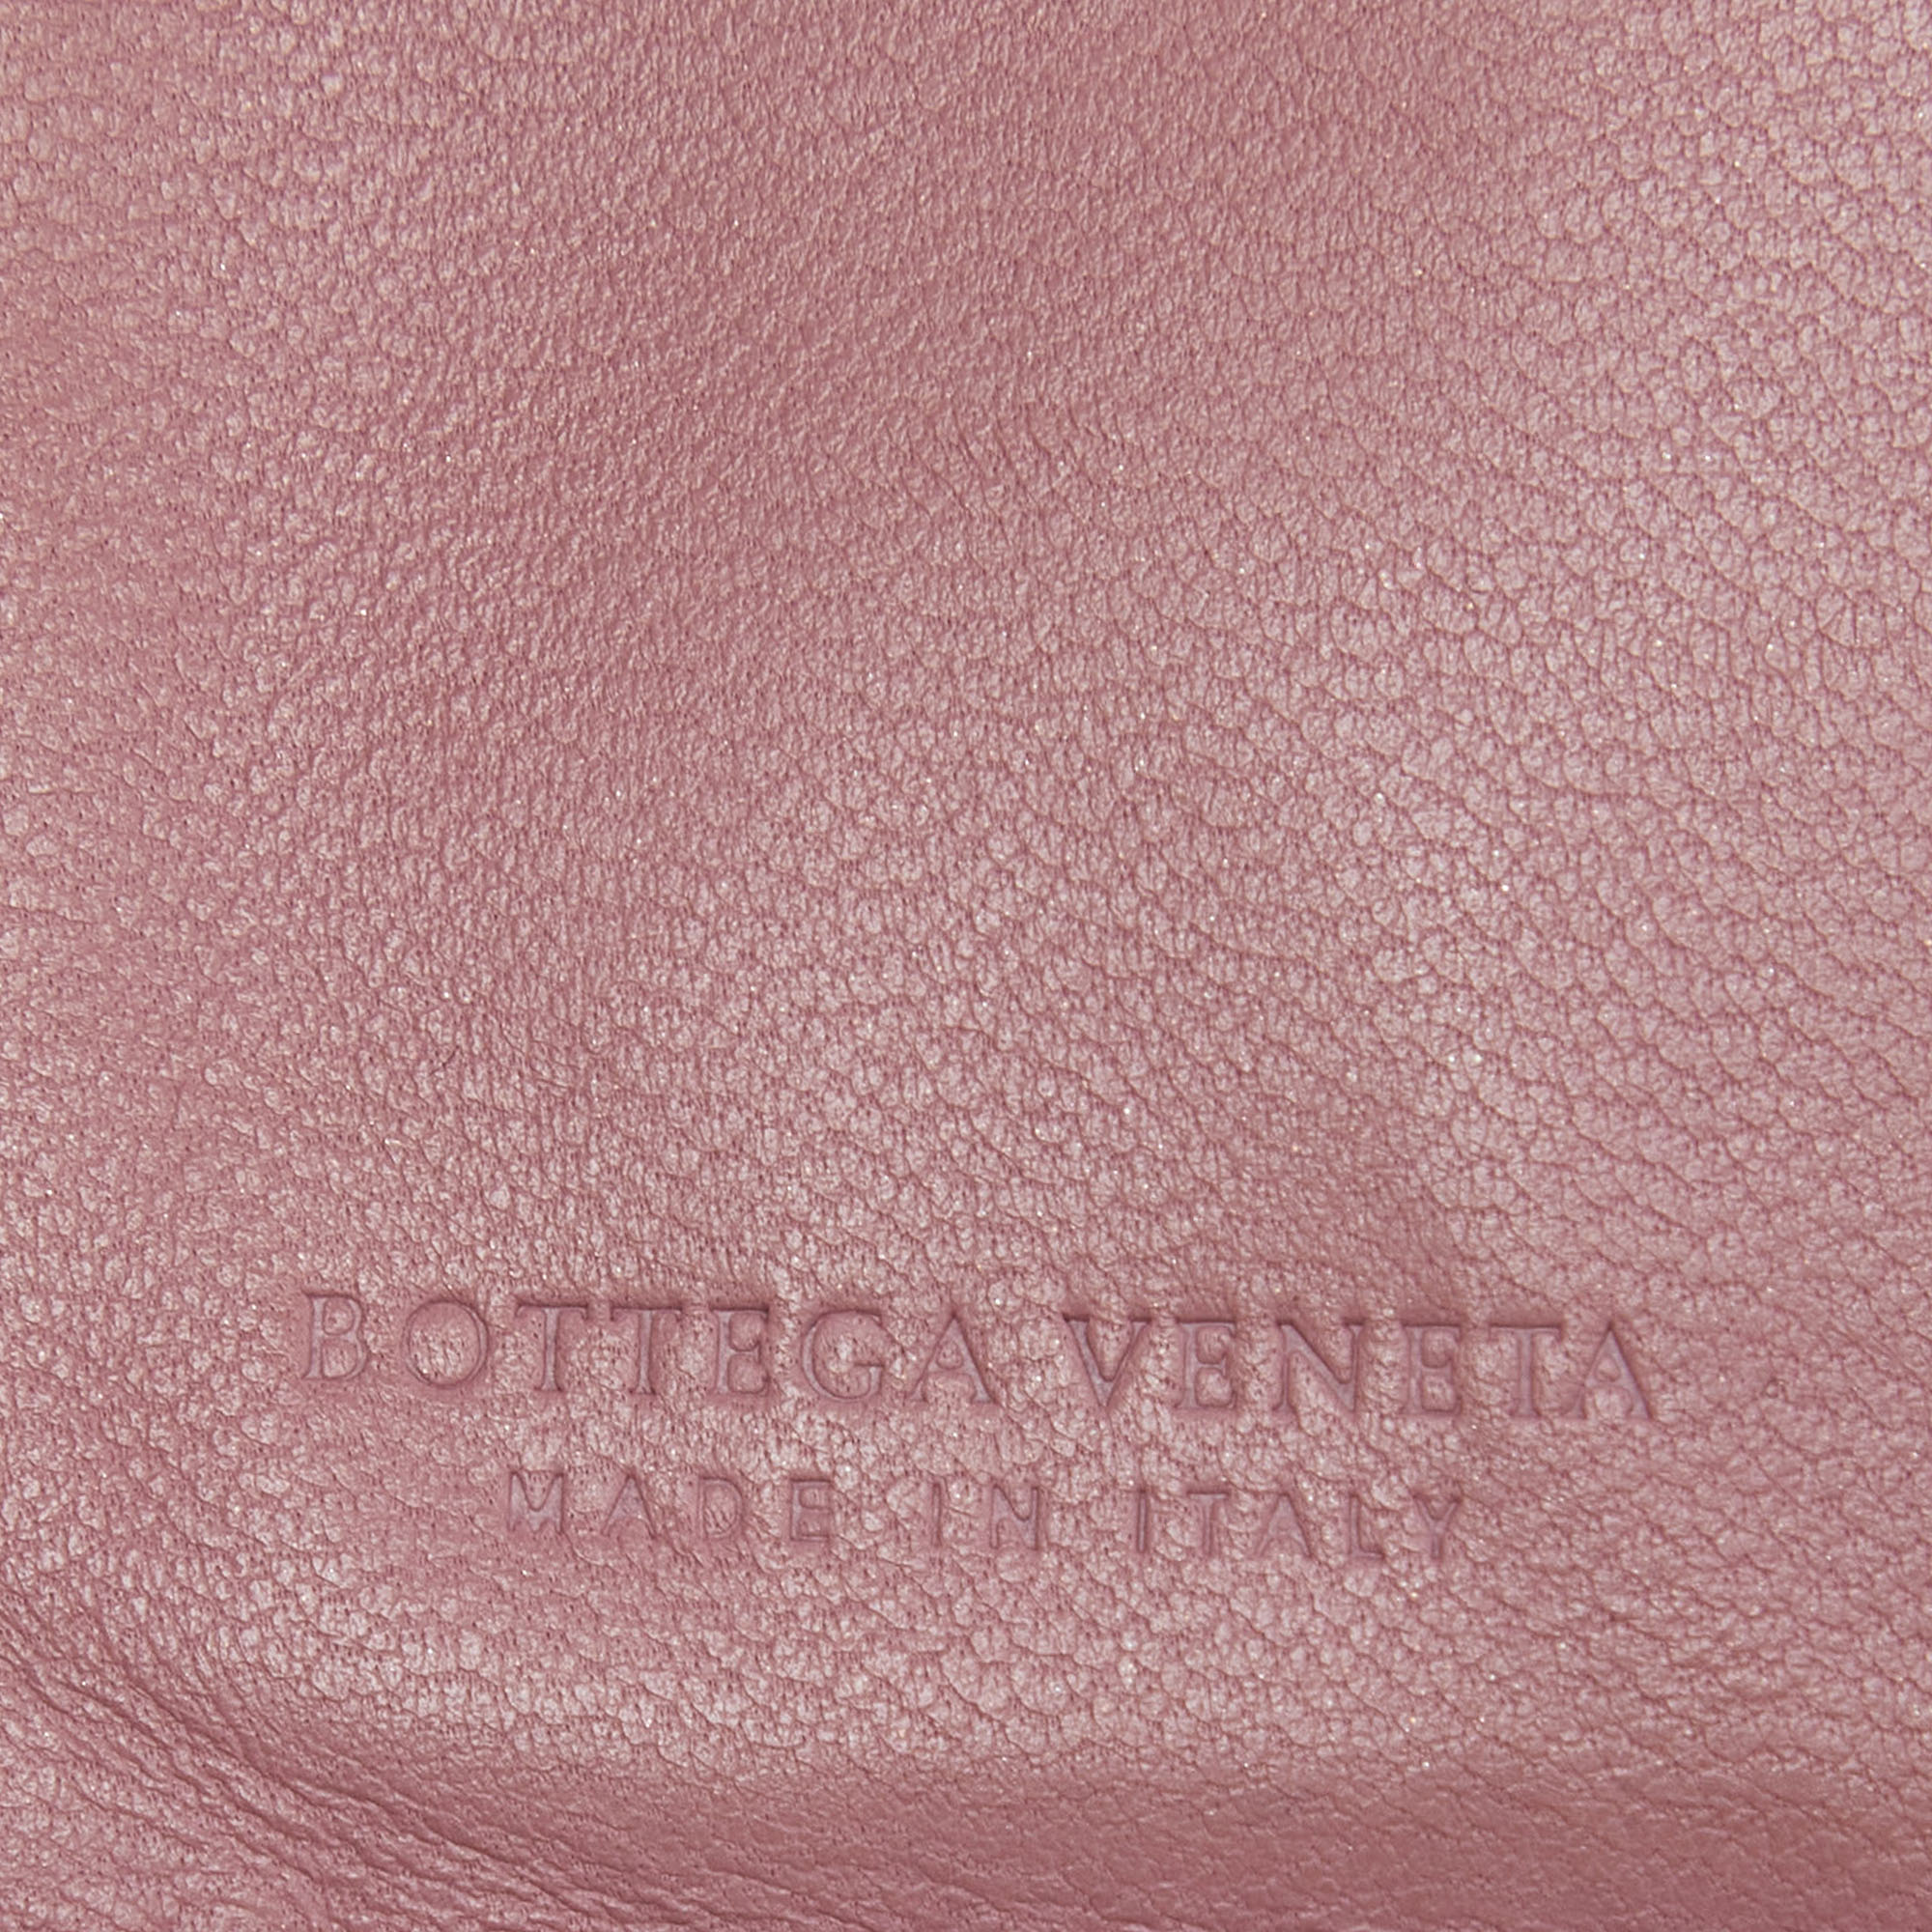 Bottega Veneta Pink Intrecciato Leather French Flap Wallet